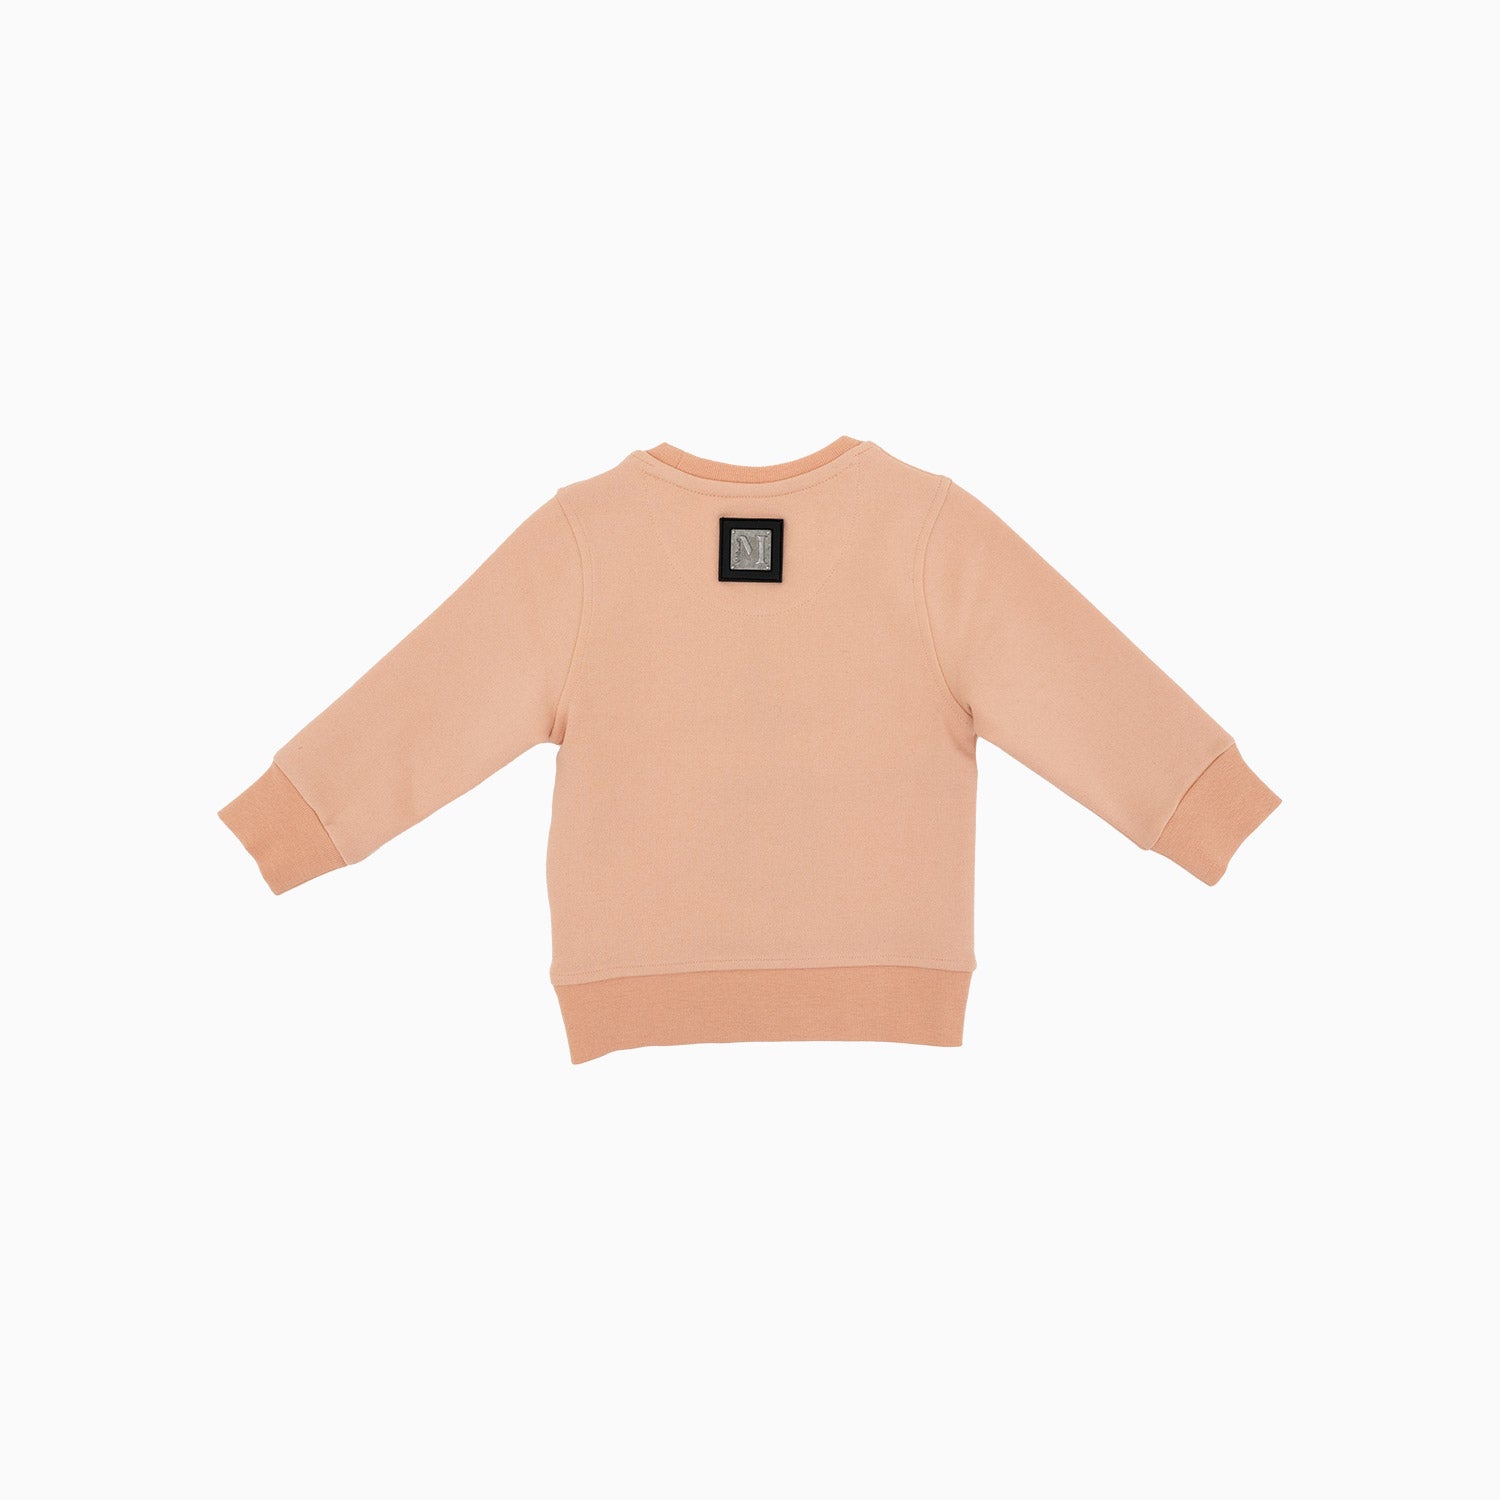 meras-kids-embroidery-crew-neck-sweatshirt-mck2310-peach